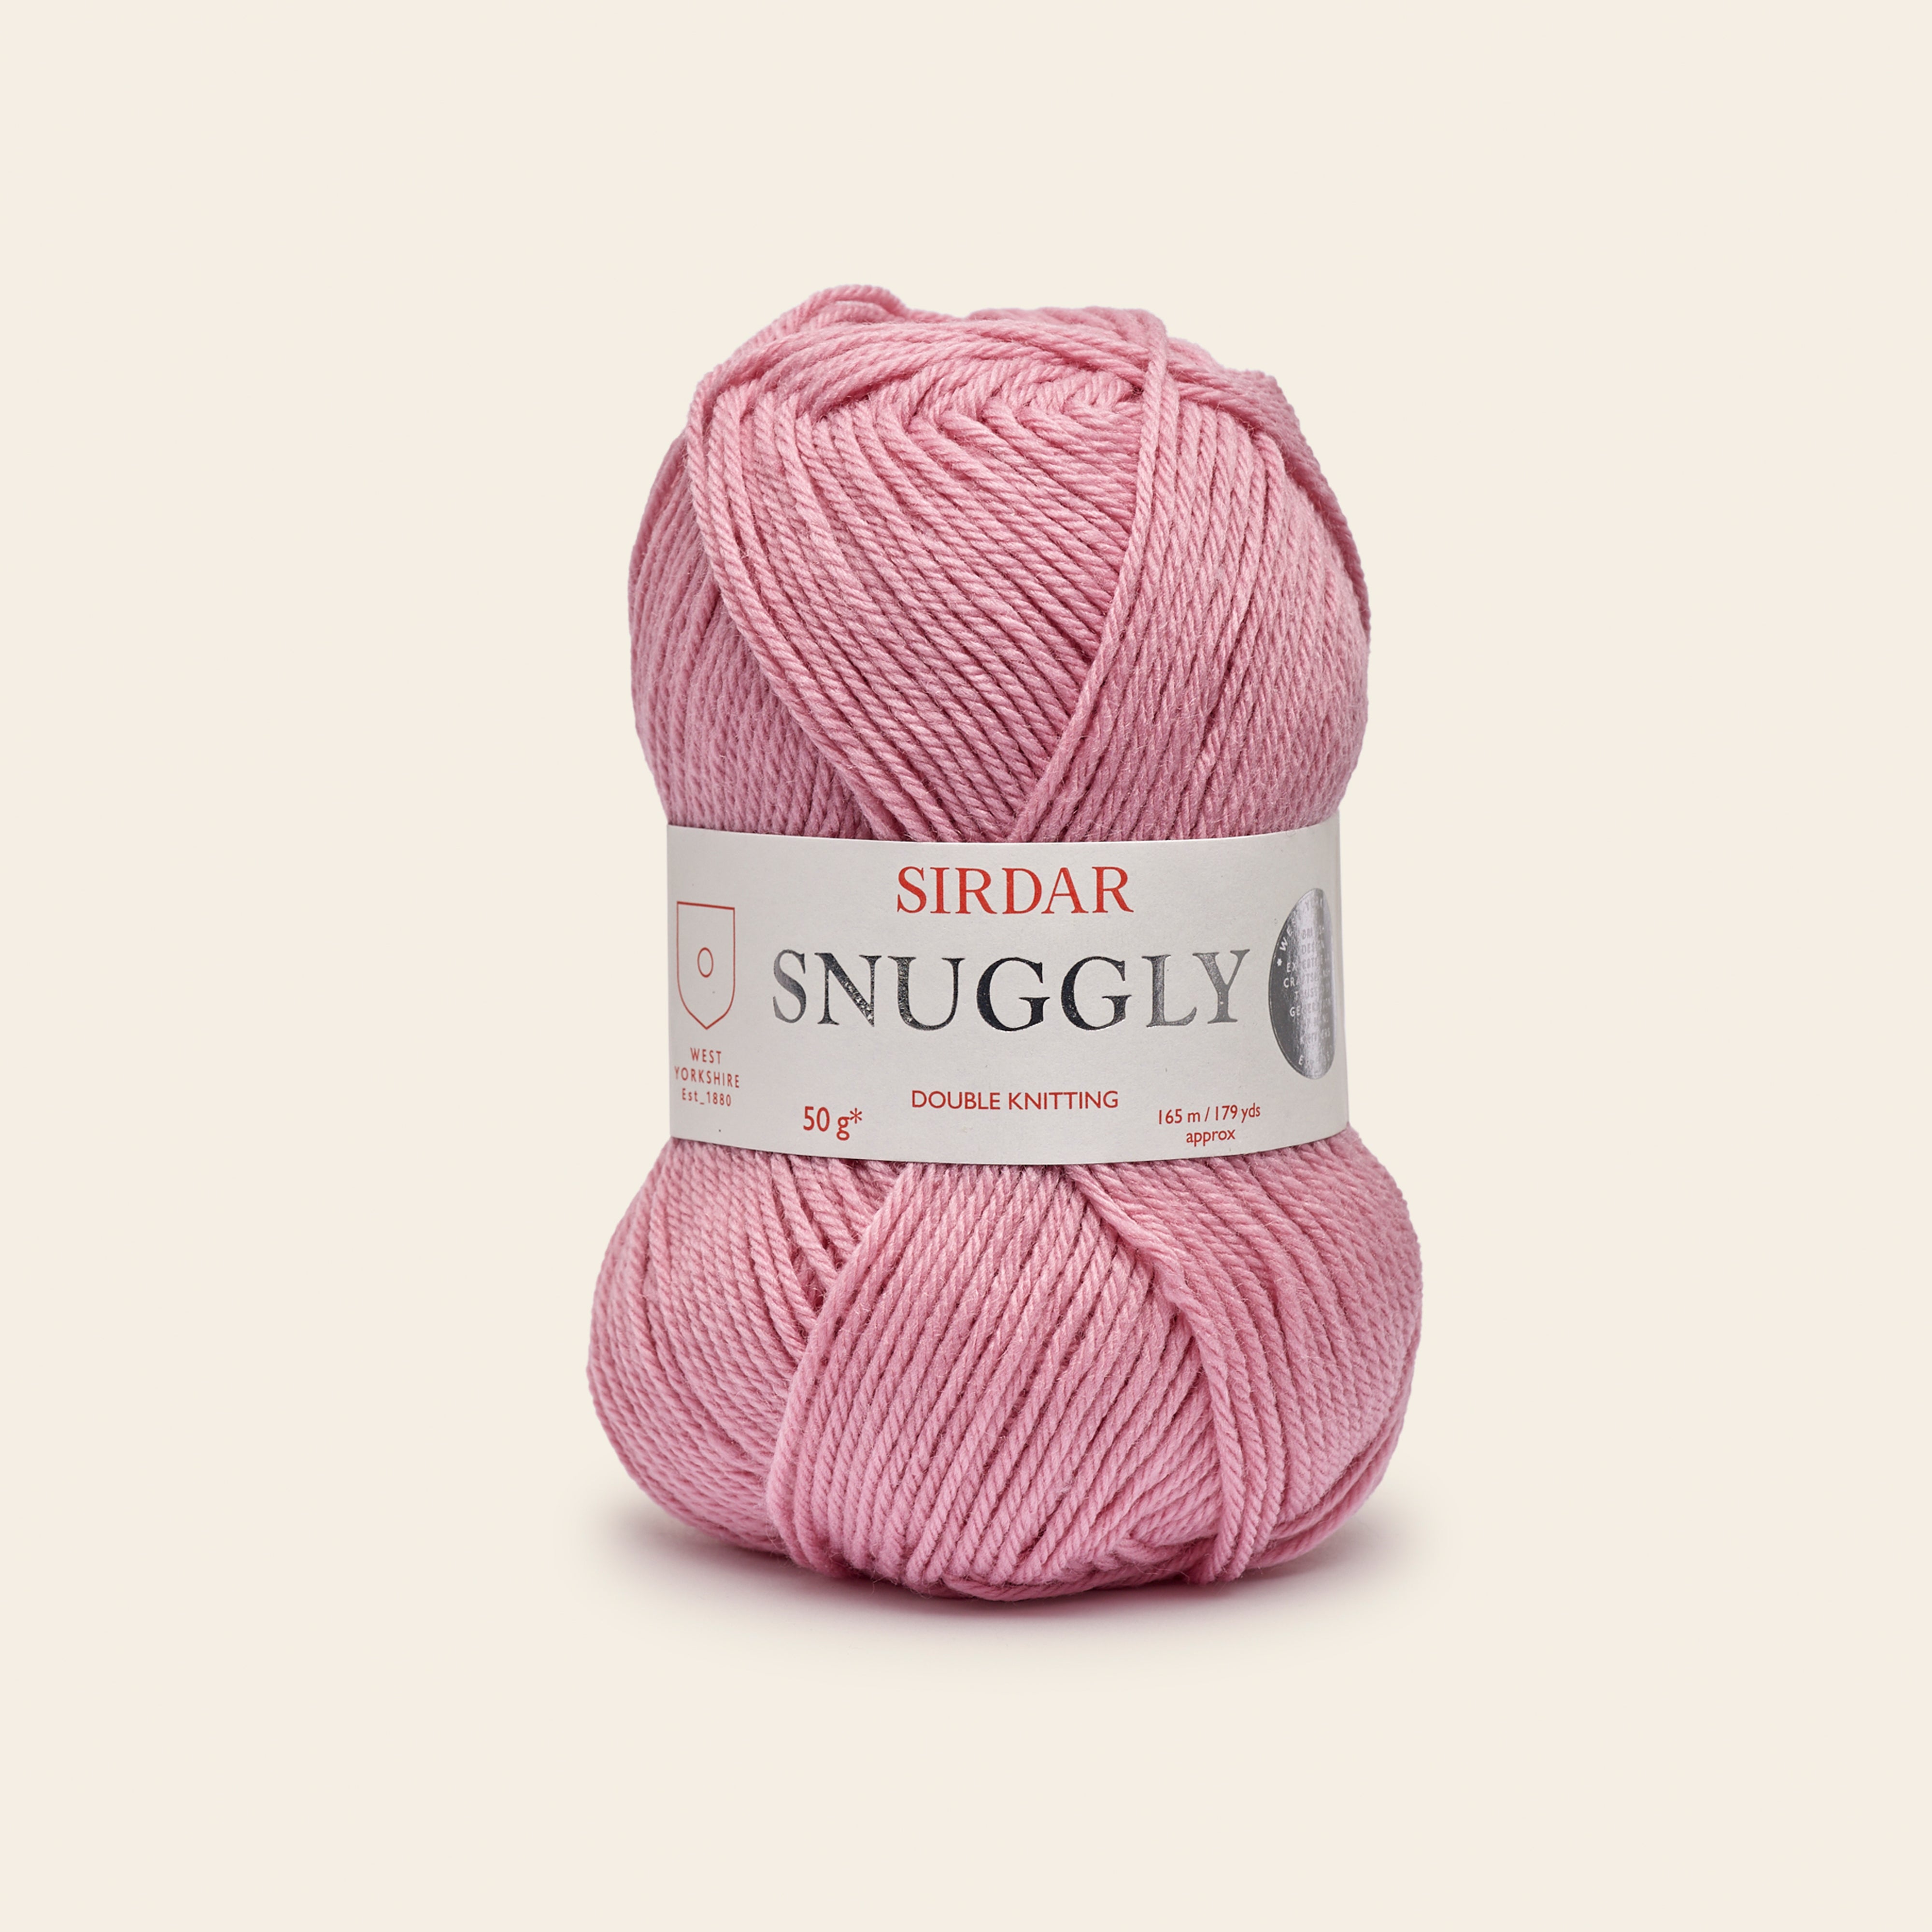 Sirdar Snuggly Double Knit Precious Pink Yarn